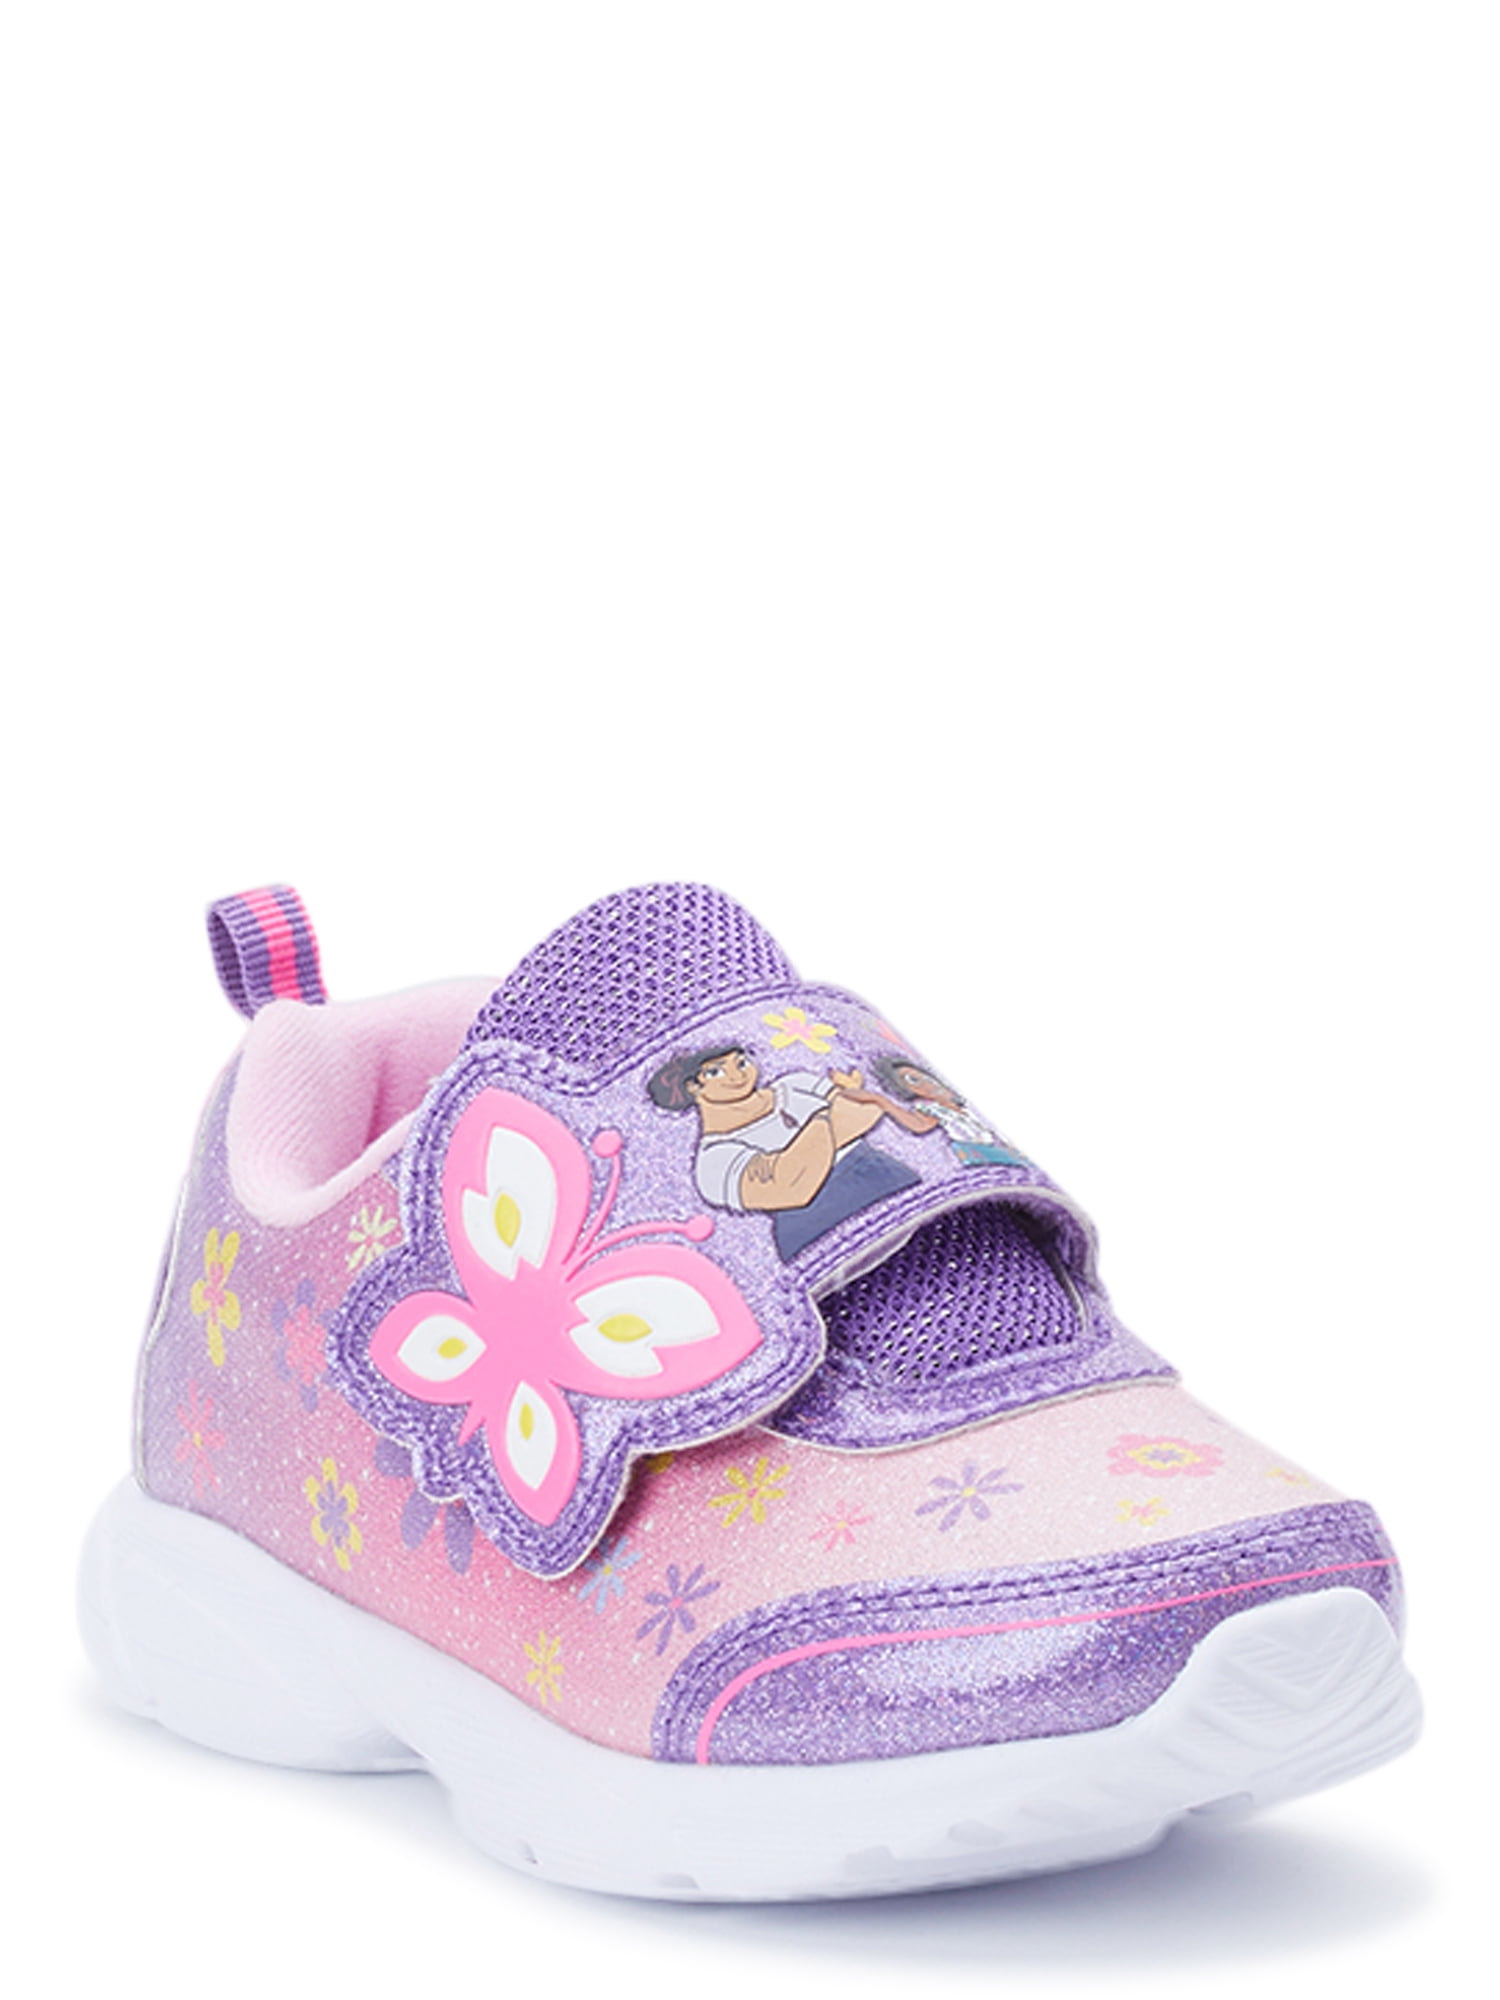 Disney Frozen Toddler Girl Athletic Light Up Sneaker, Sizes 7-12, Toddler Girl's, Size: 9, Blue